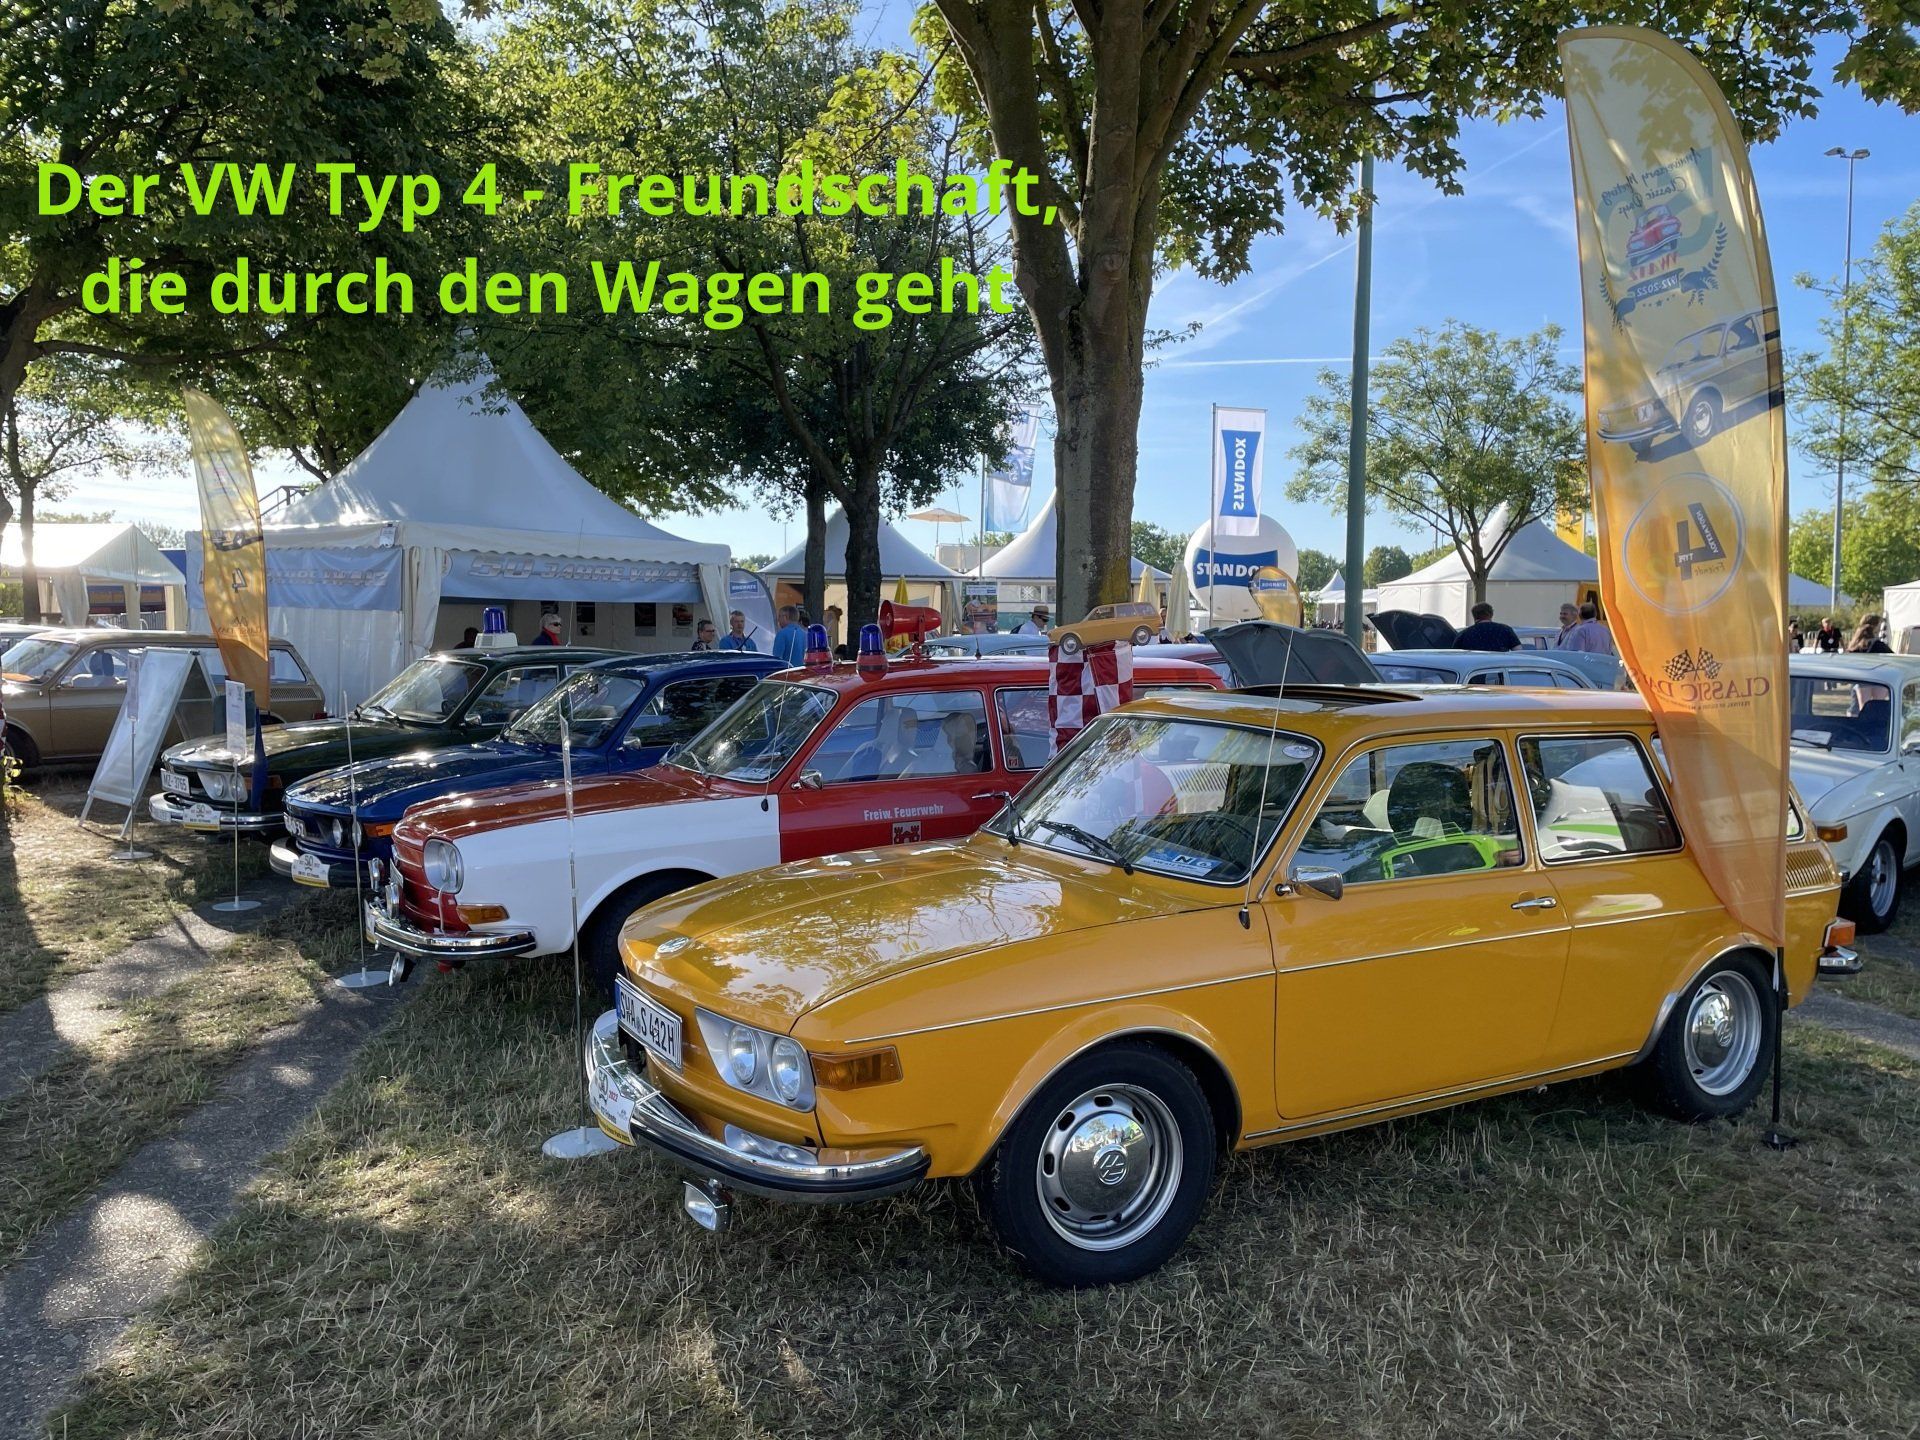 VW 411/412 bei den Classic Days 2022 in Düsseldorf, 50 Jahre VW 412, Feuerwehr, Polizei, Vereinszelt